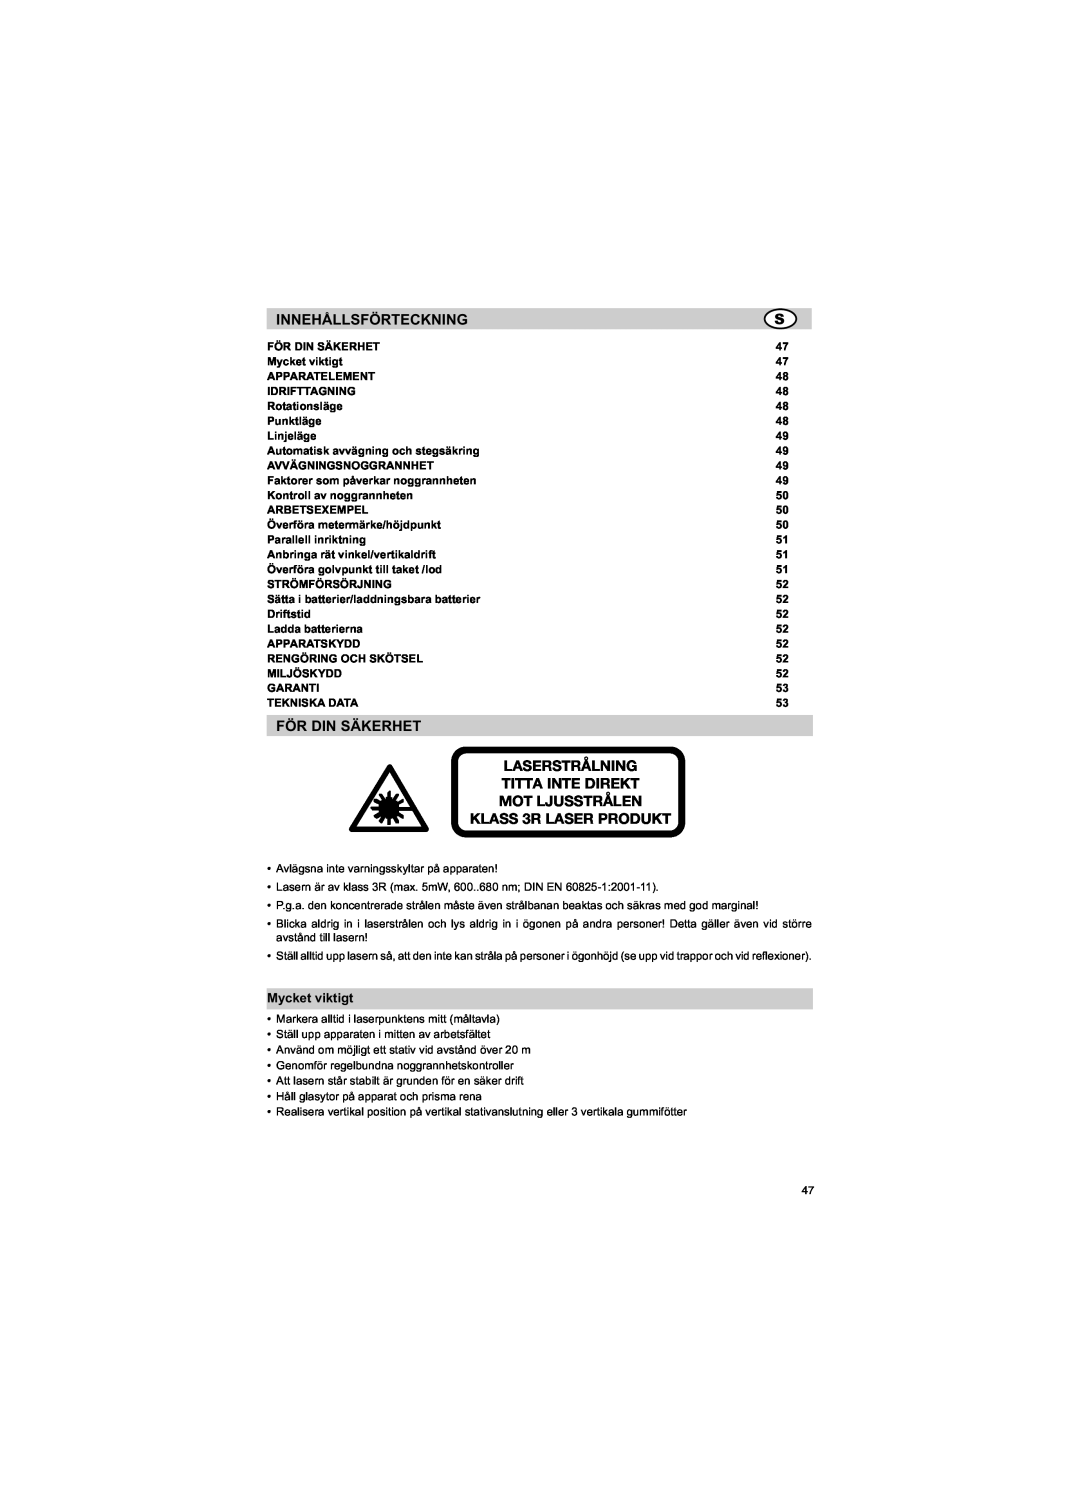 Trimble Outdoors HV301 manual Innehållsförteckning, För Din Säkerhet Laserstrålning Titta Inte Direkt, Mycket viktigt 